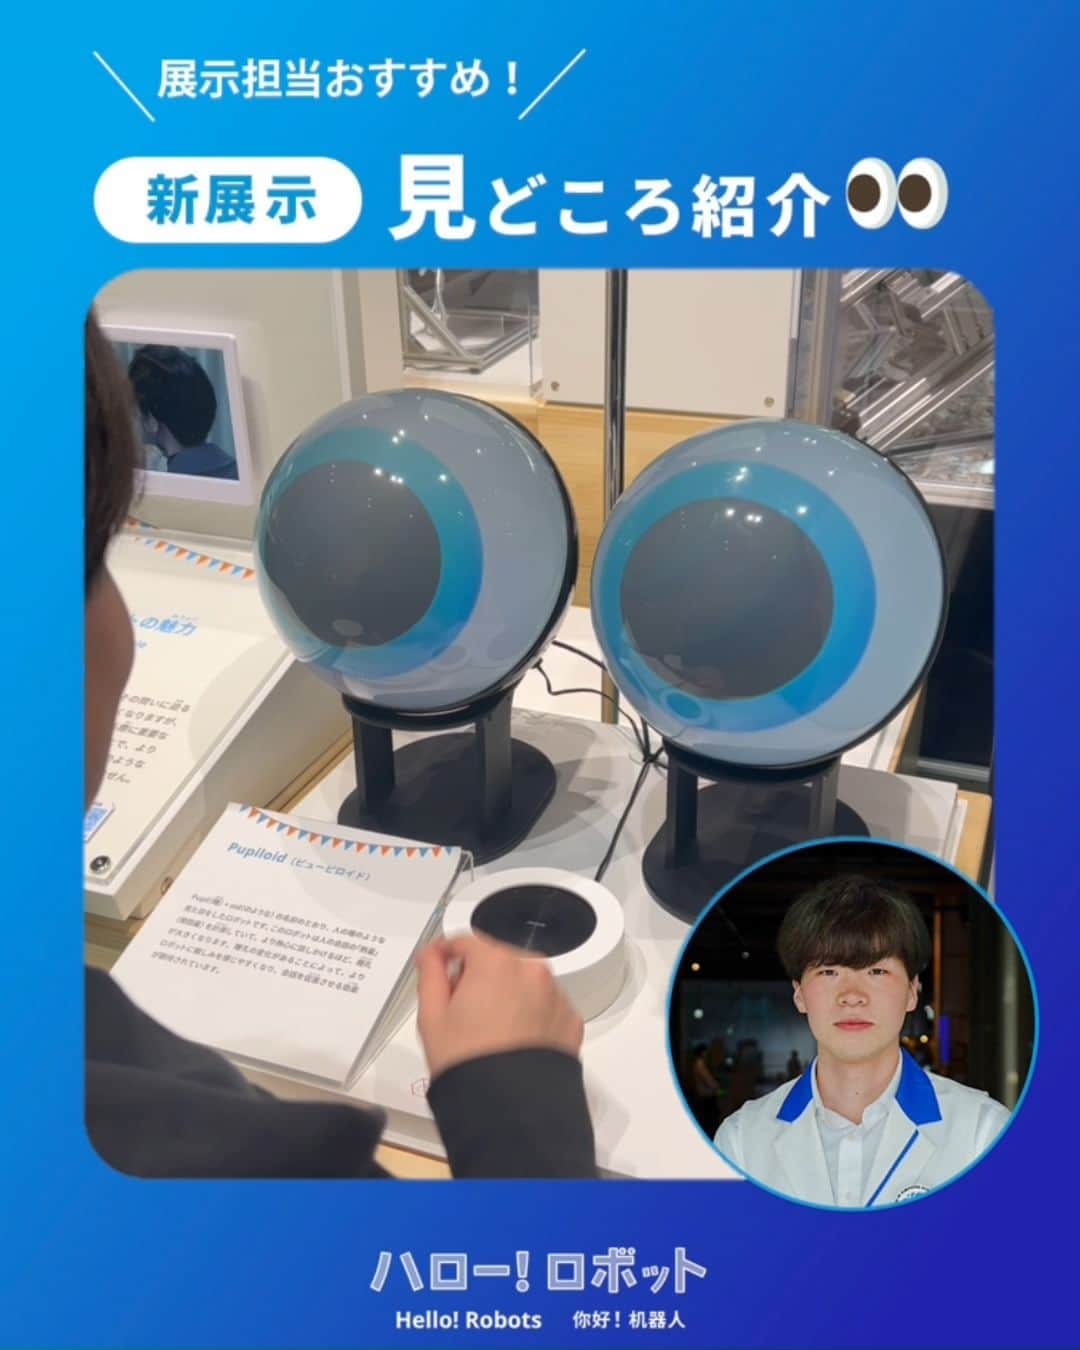 Miraikan, 日本科学未来館のインスタグラム：「【人の身体や動きの研究から生まれたロボット🤖】  新展示「ハロー！ ロボット」担当 岩澤のおすすめは…👀  「Pupiloid(ピューピロイド)」と 「けんけんロボット」 人の身体や動きの研究をもとにつくられた２つのロボット。 思わず目を奪われてしまうダイナミックな動きや表現には、実はたくさんのヒミツが隠されているんです！  ＃ハロロボ #ロボット #robot  #miraikan #未来館 #日本科学未来館 #科学館 #東京テレポート #お台場 #ミュージアム #博物館巡り #博物館 #お出かけスポット #東京おでかけ #子供とおでかけ #子供とお出かけ部 #子育て #育児 #sciencemuseum #museum #tokyo #odaiba #odaibatokyo #traveljapan #japantrip #japantravel #japantravelphoto」